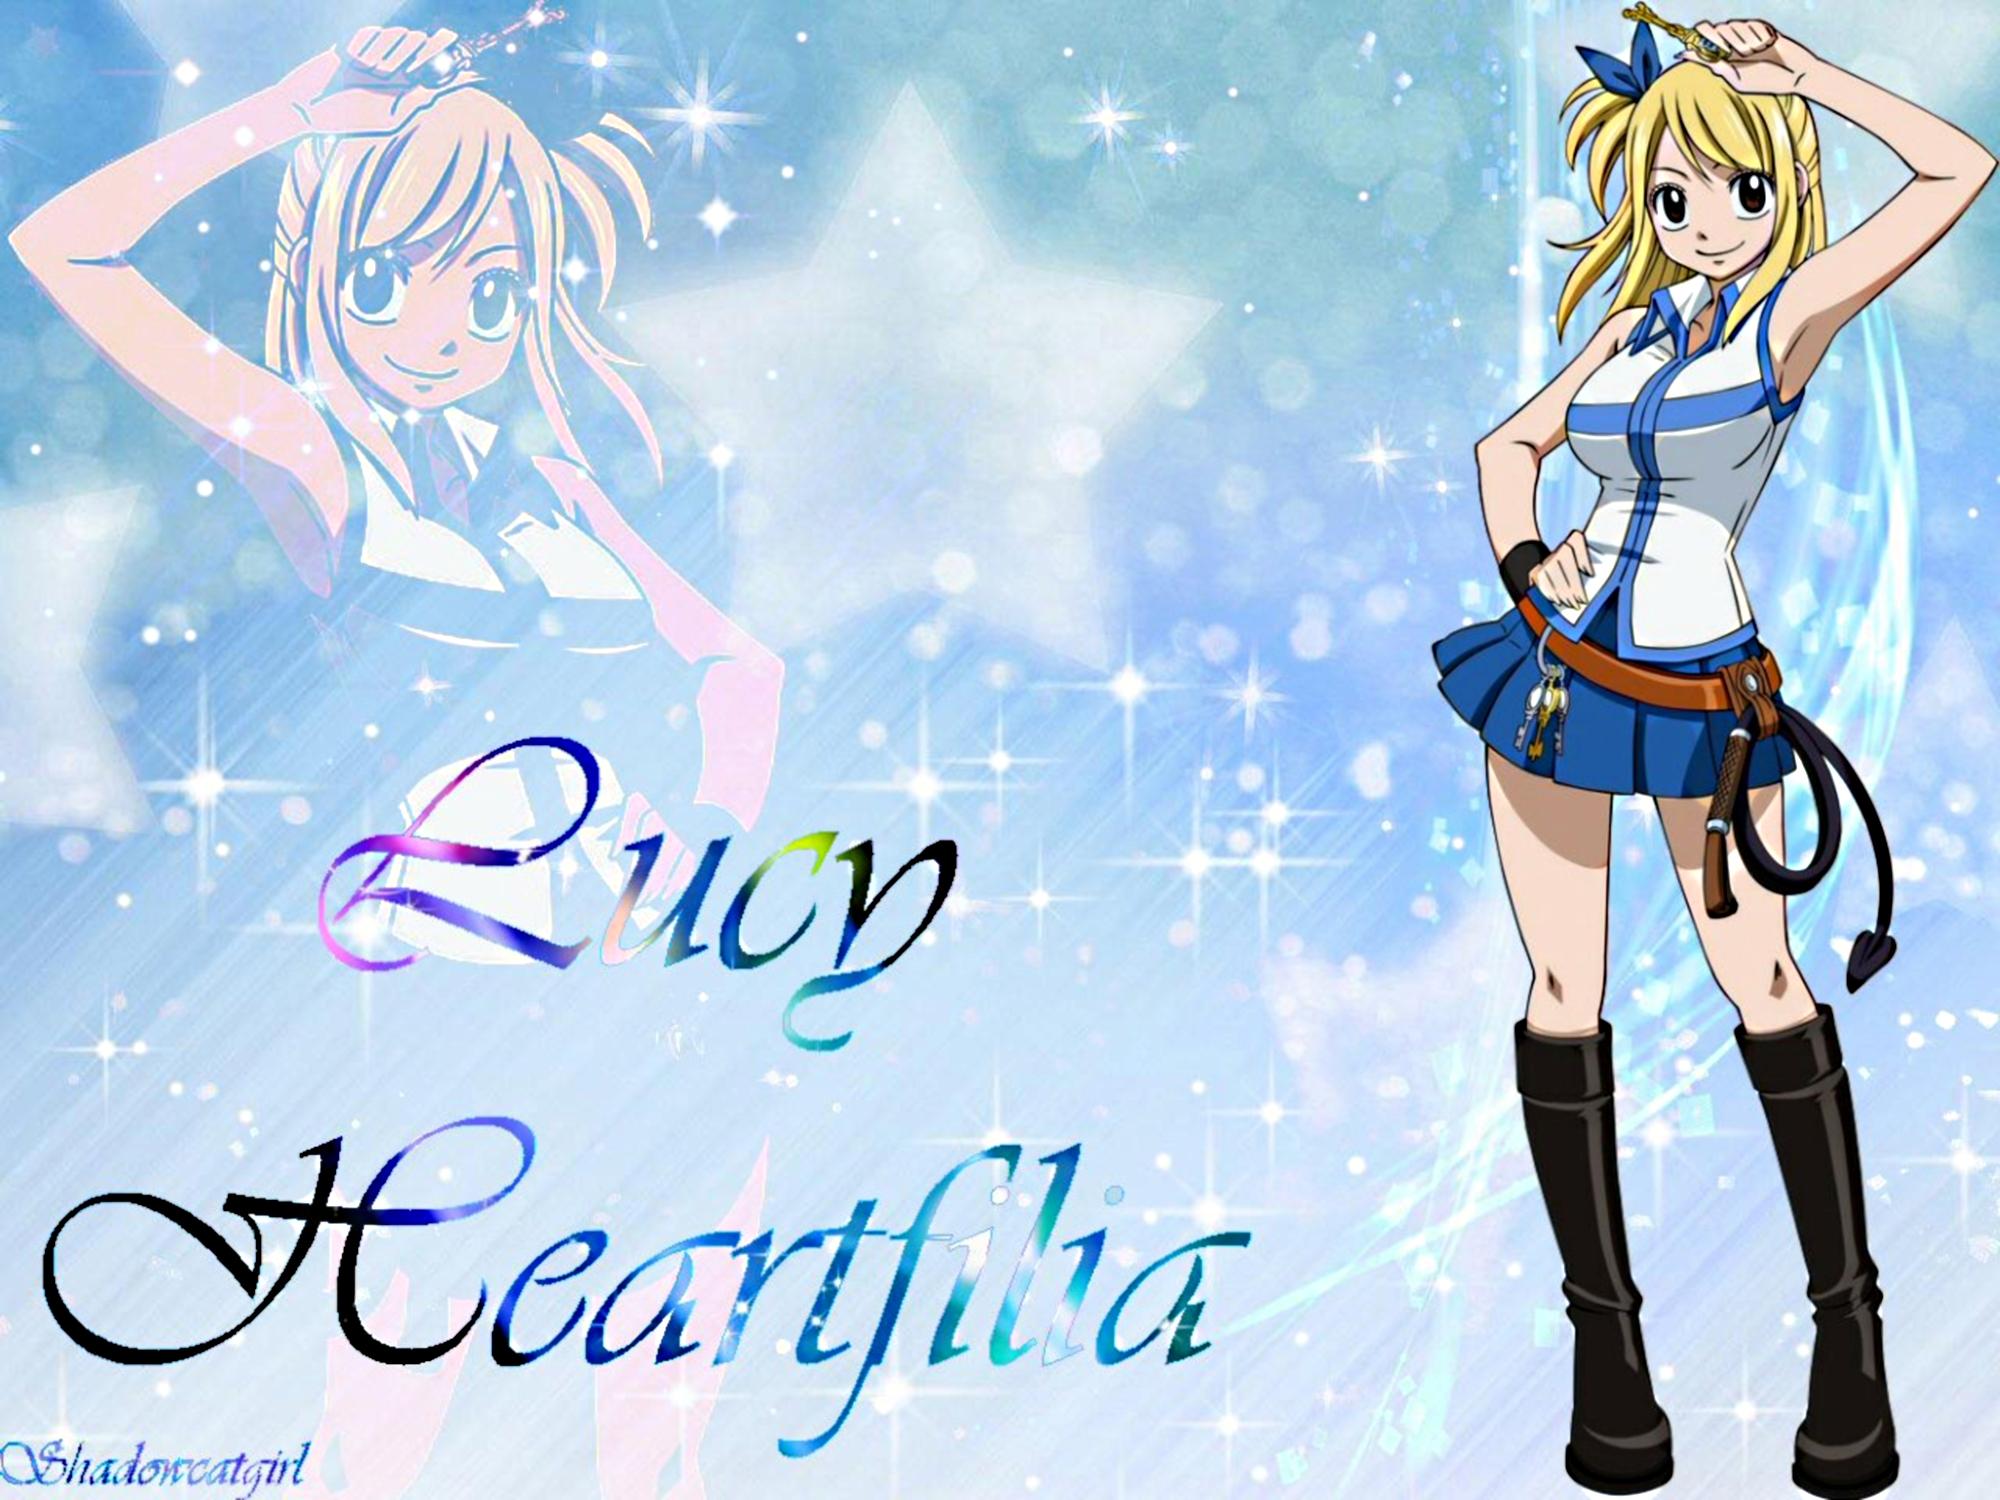 2000 x 1500 · jpeg - Lucy Heartfilia~! - Fairy Tail Wallpaper (35725832) - Fanpop